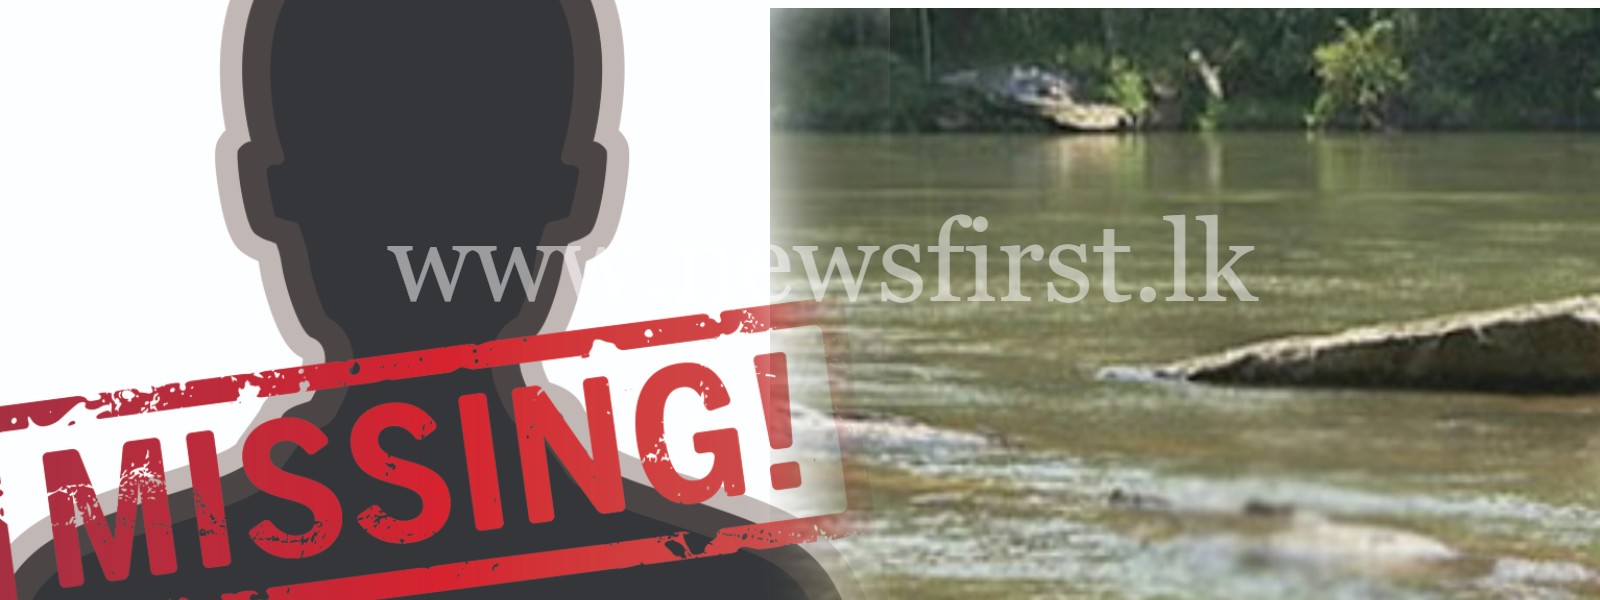 Man falls in to Kelani River; Search Underway